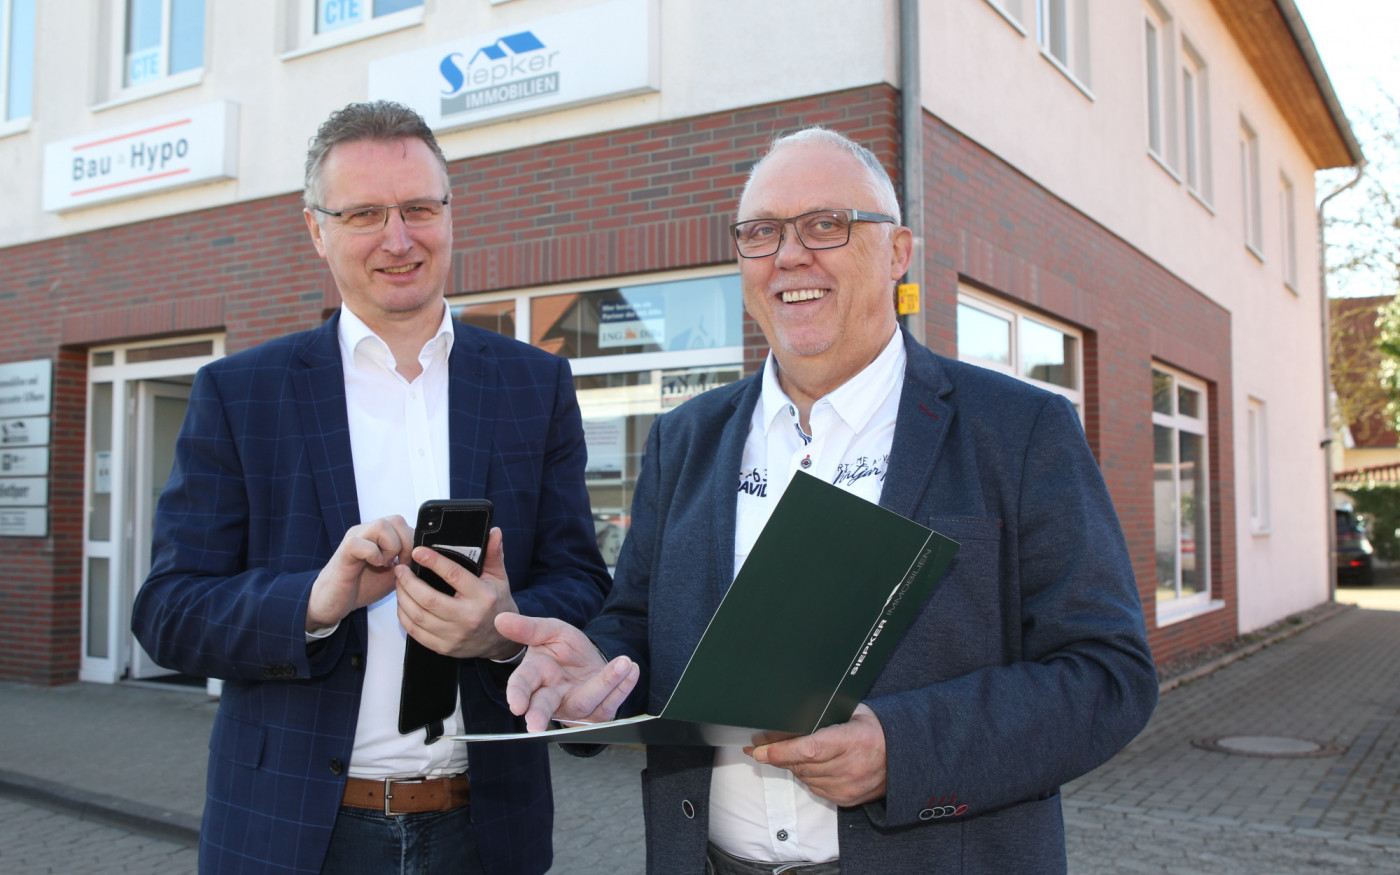 Trotz Rente mit voller Kraft im Einsatz für unsere Stadt - Siepker Immobilien: Wolfgang Schicker vertraut auf den Wirtschaftsstandort Gifhorn